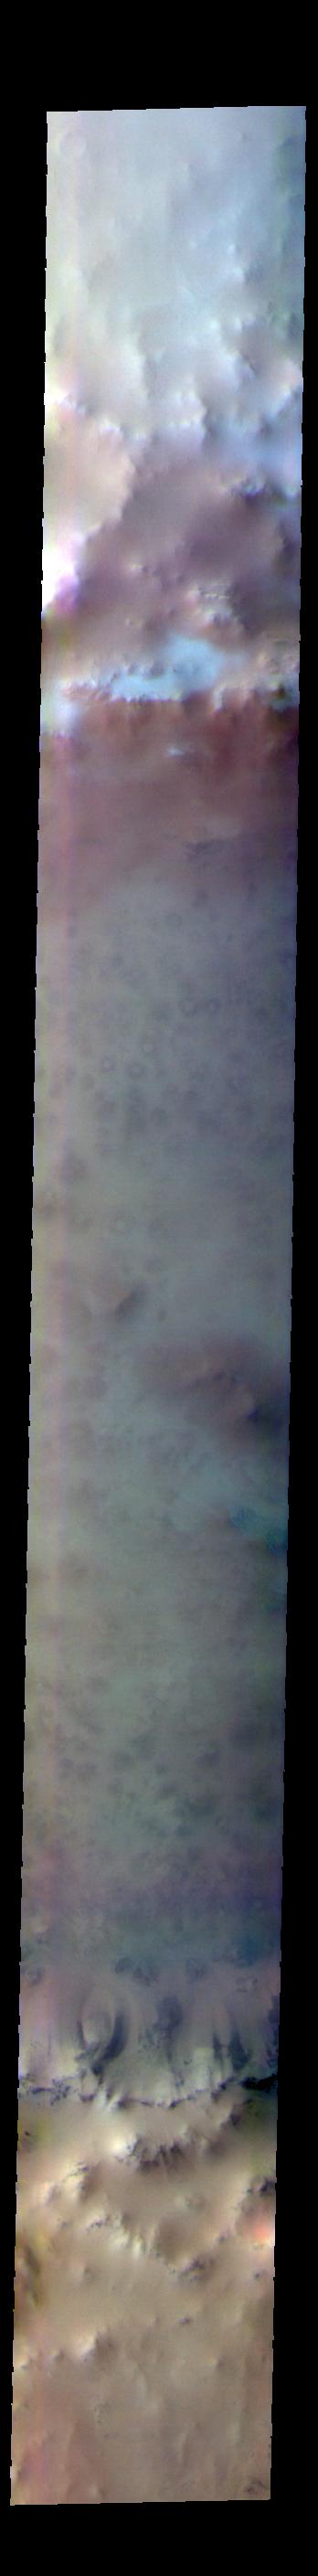 PIA25091: Lomonosov Crater - False Color